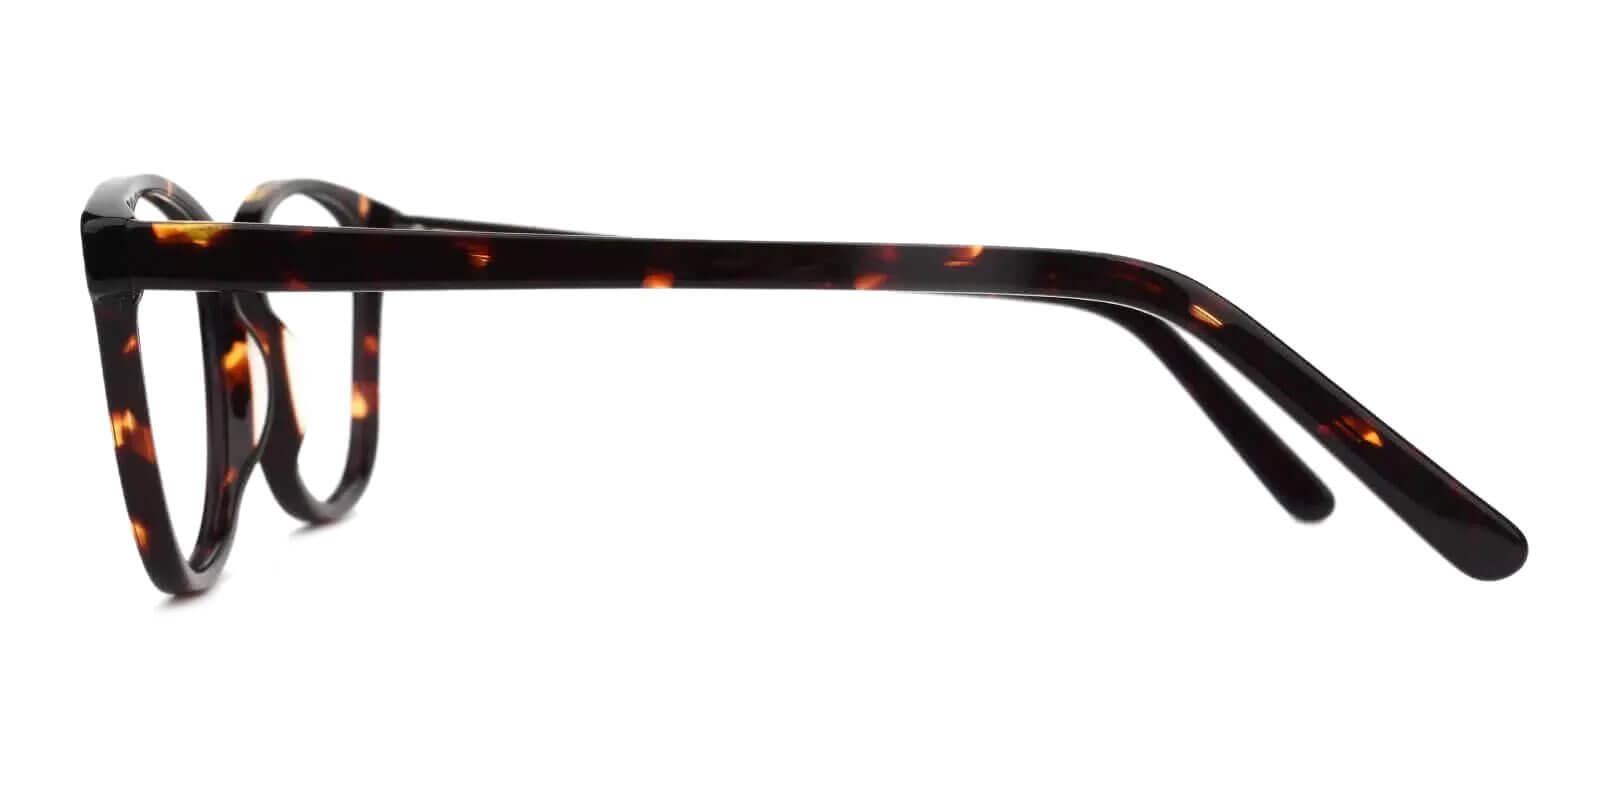 Bolivia Tortoise Acetate Eyeglasses , SpringHinges , UniversalBridgeFit Frames from ABBE Glasses